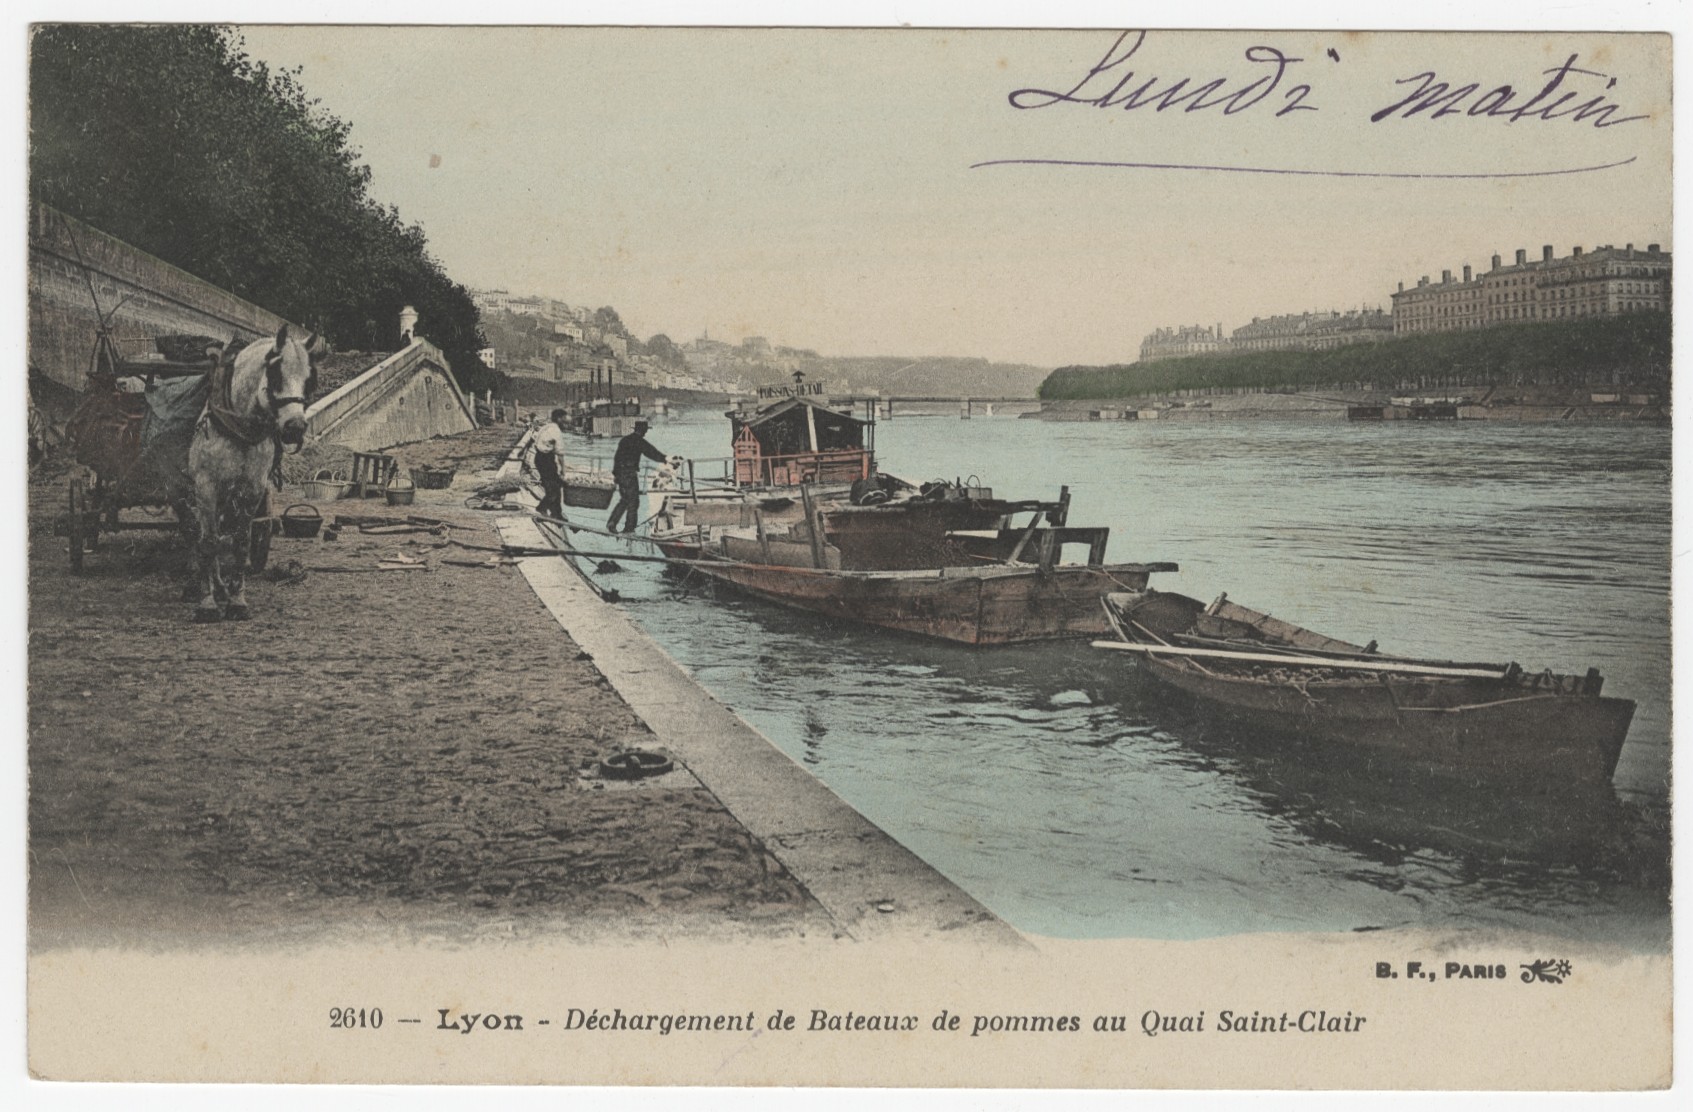 Lyon - Déchargement de bateaux de pommes au quai Saint-Clair : carte postale colorisée (vers 1910, cote : 4FI/3335)